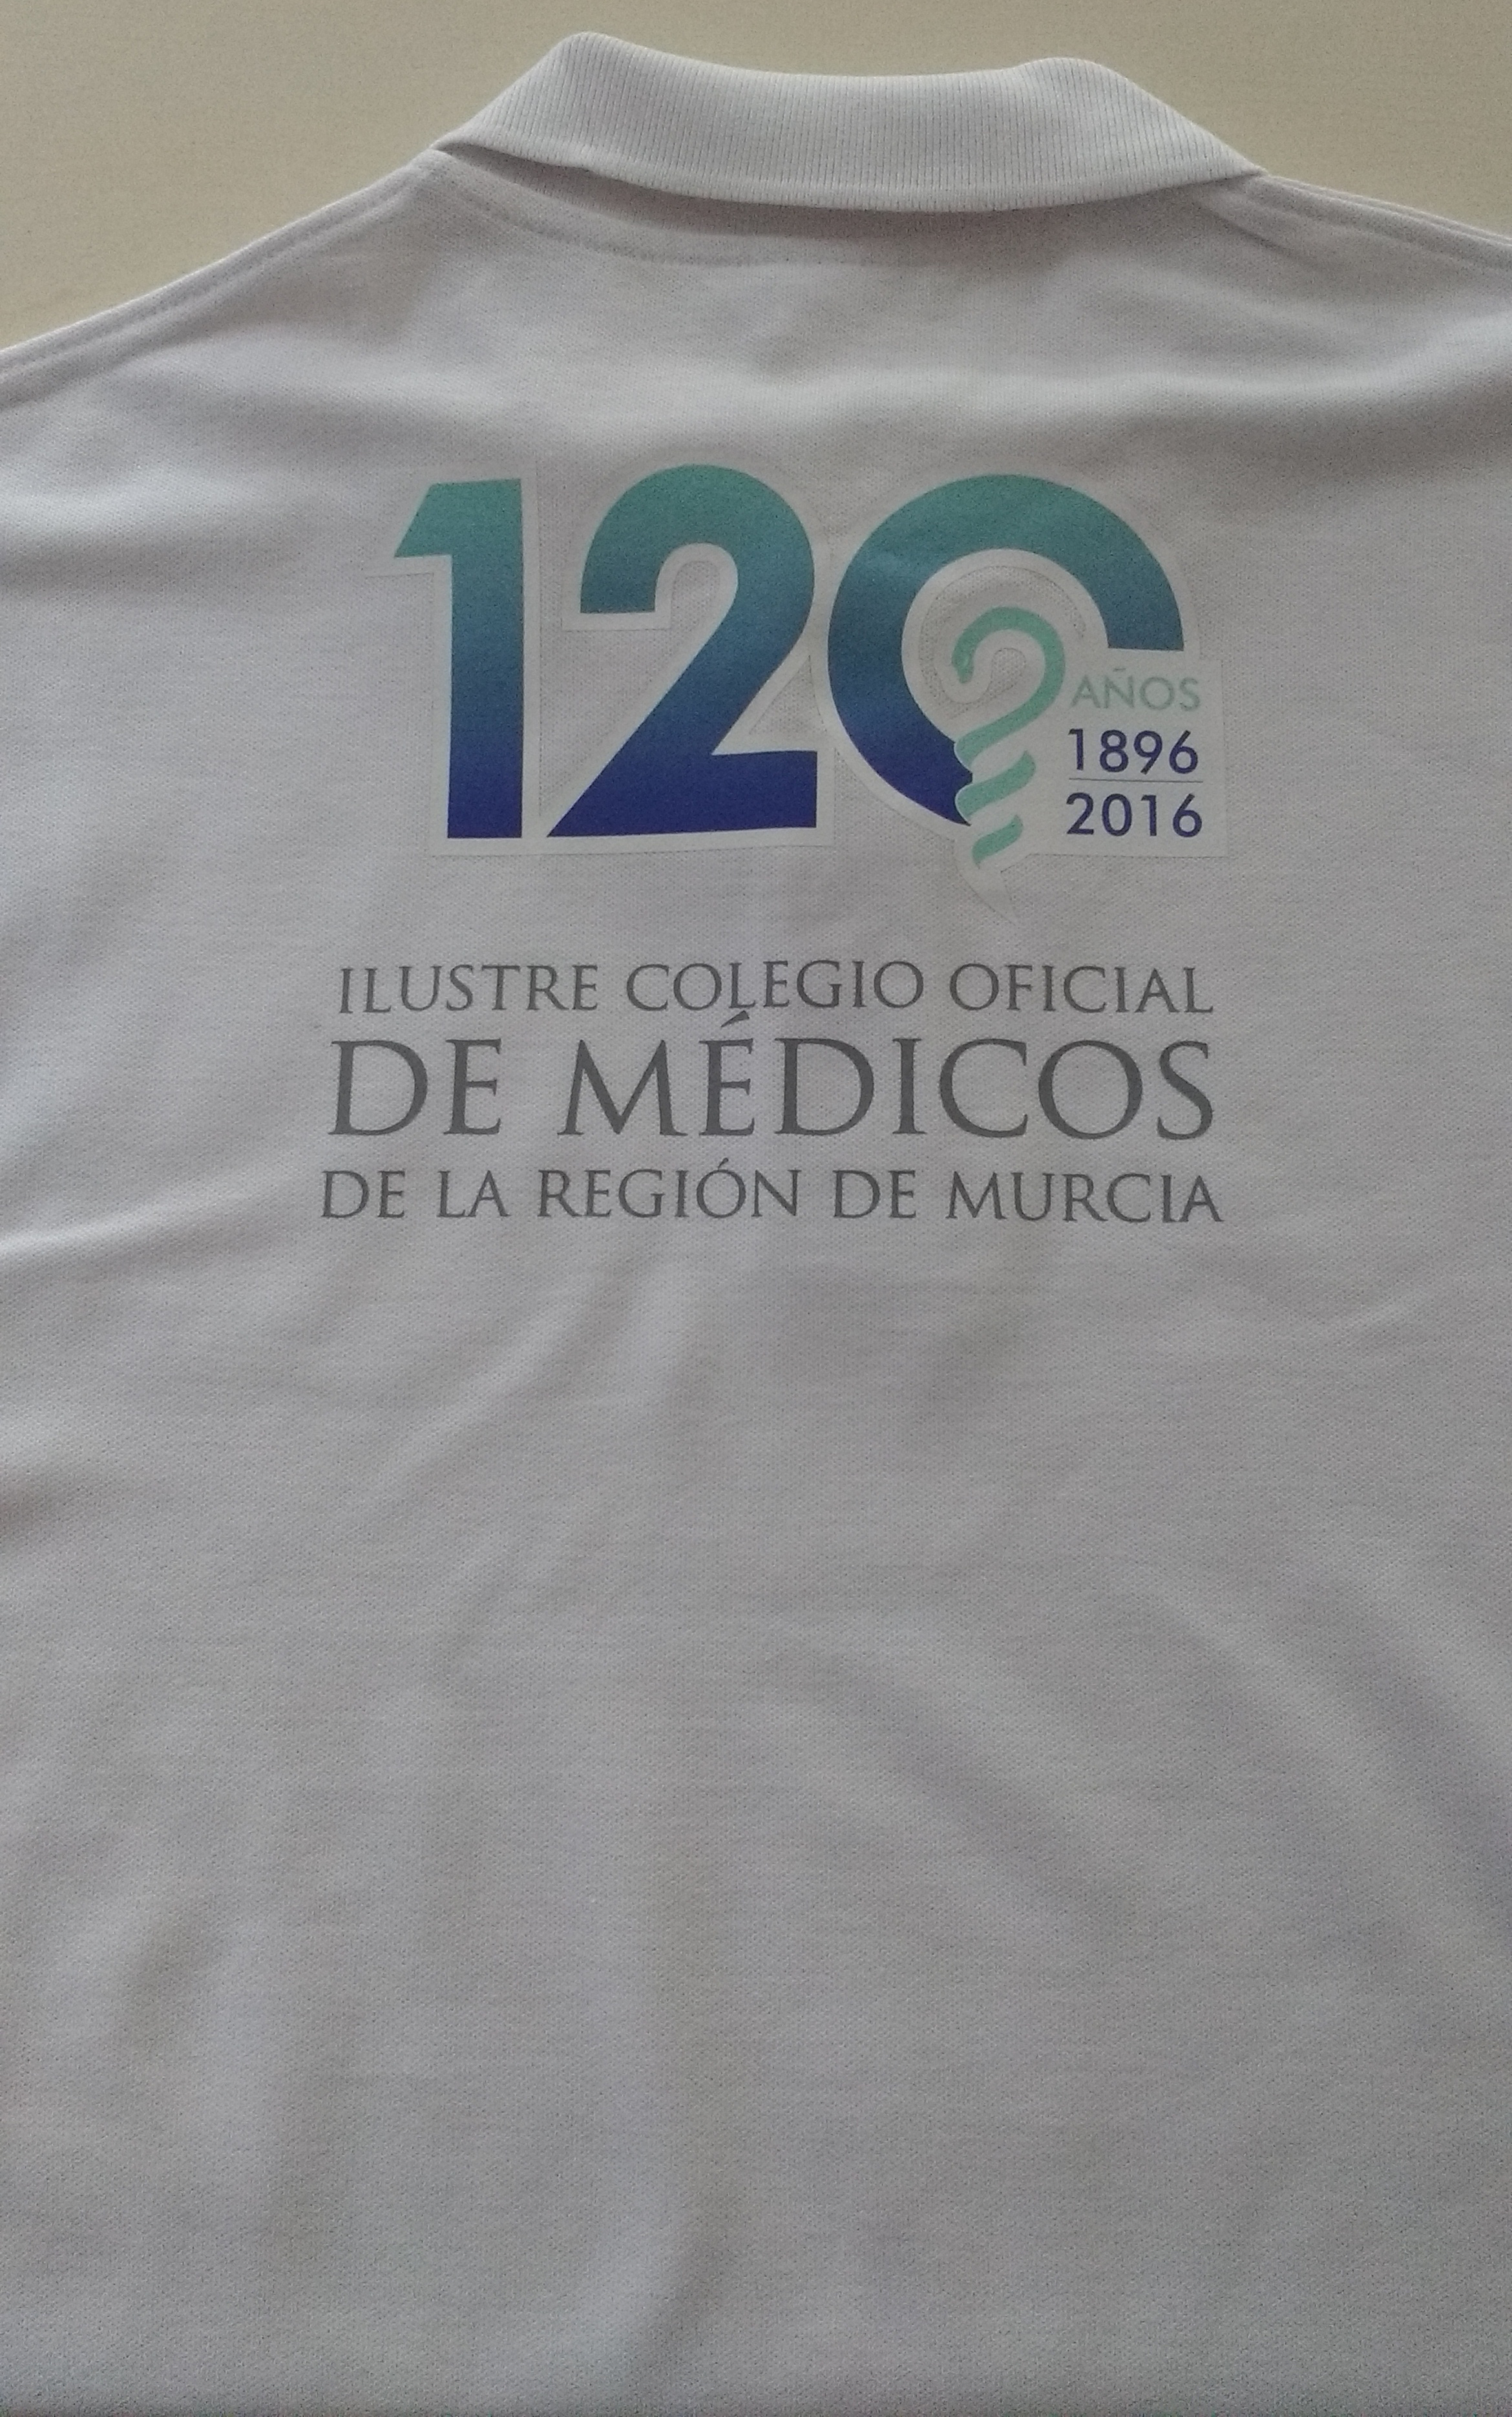 Congreso Ilustre Colegio Oficial de Medicos